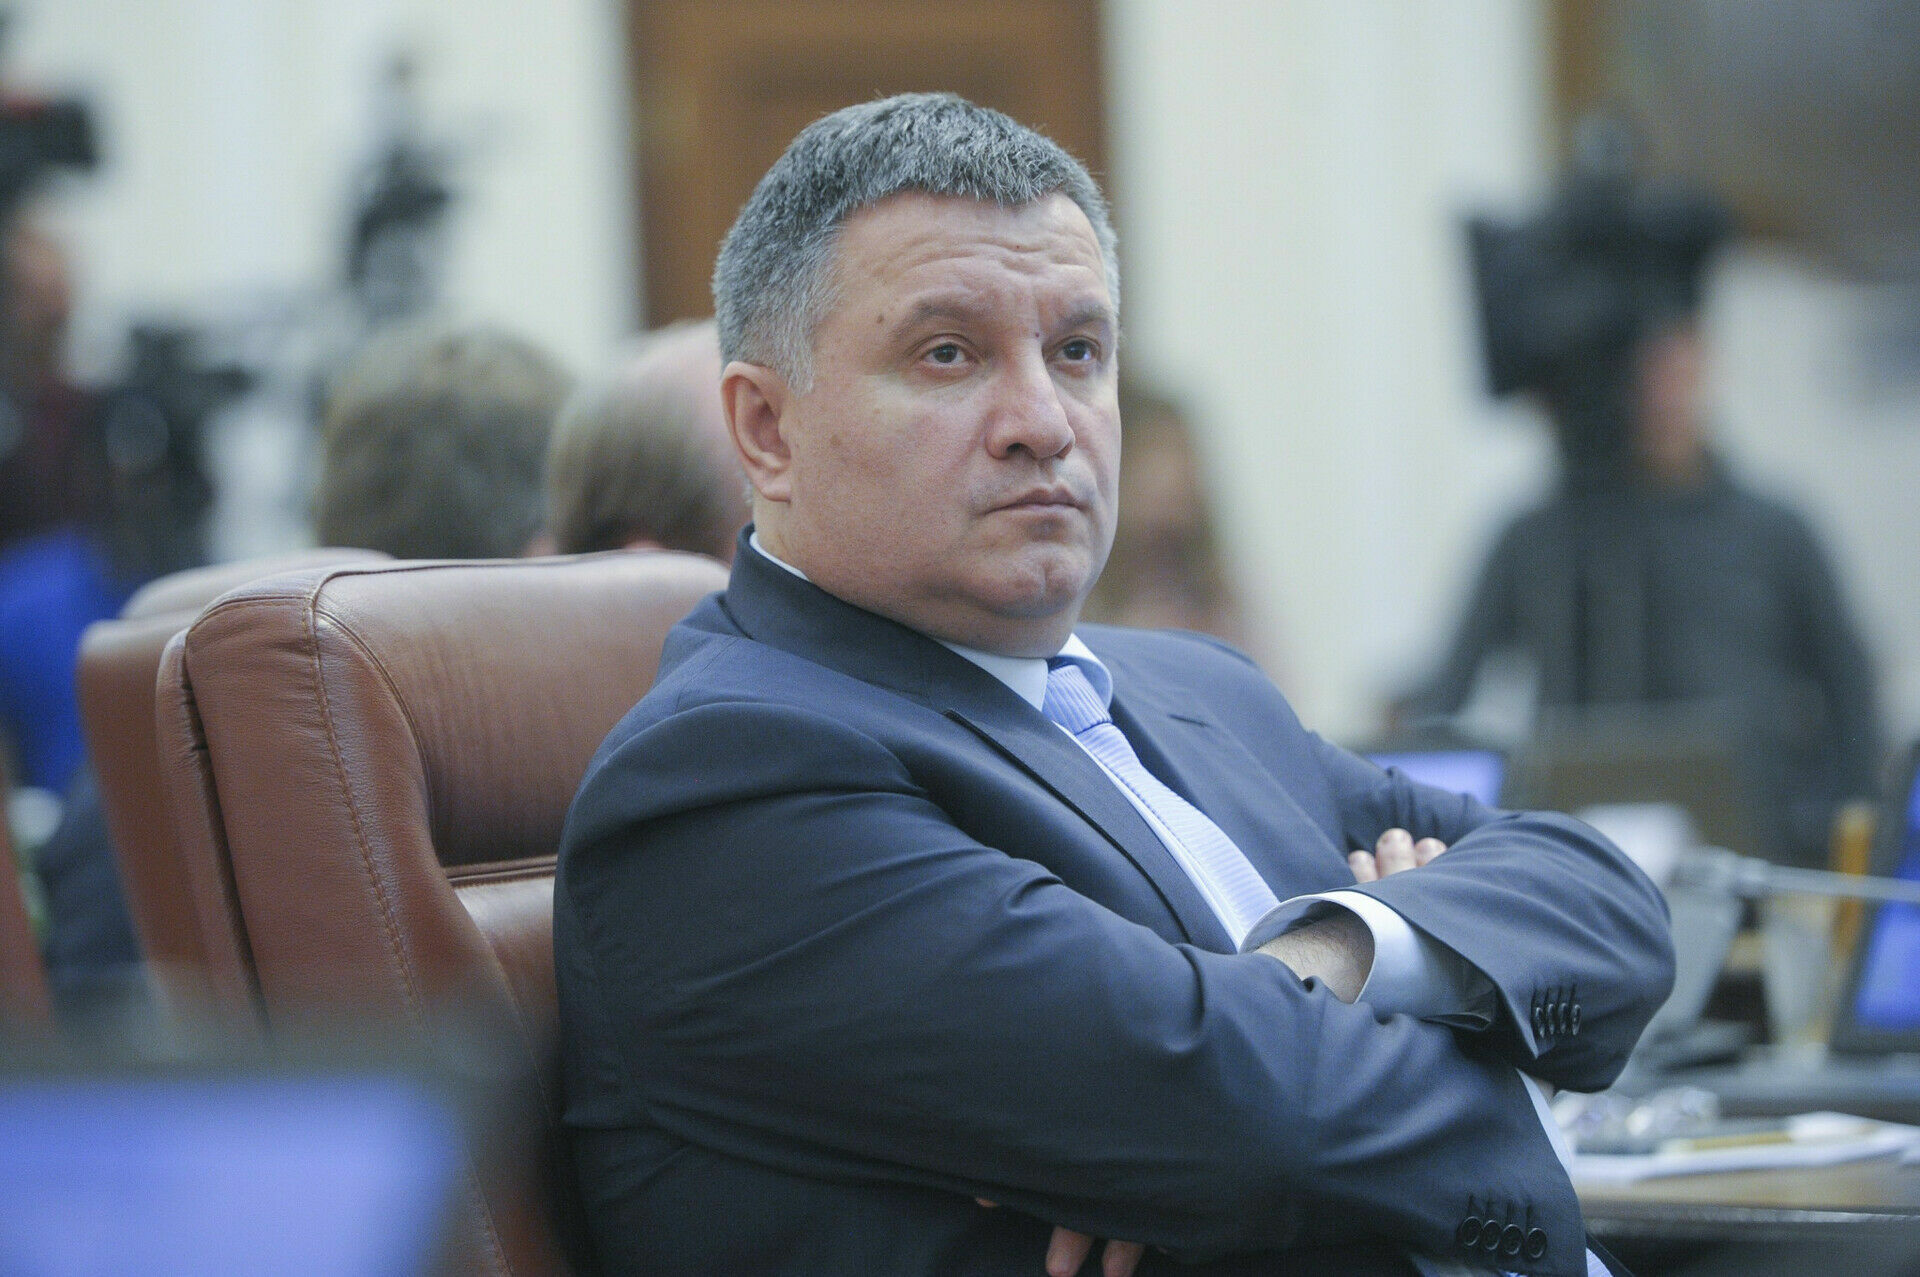 Глава МВД Украины Арсен Аваков подал в отставку